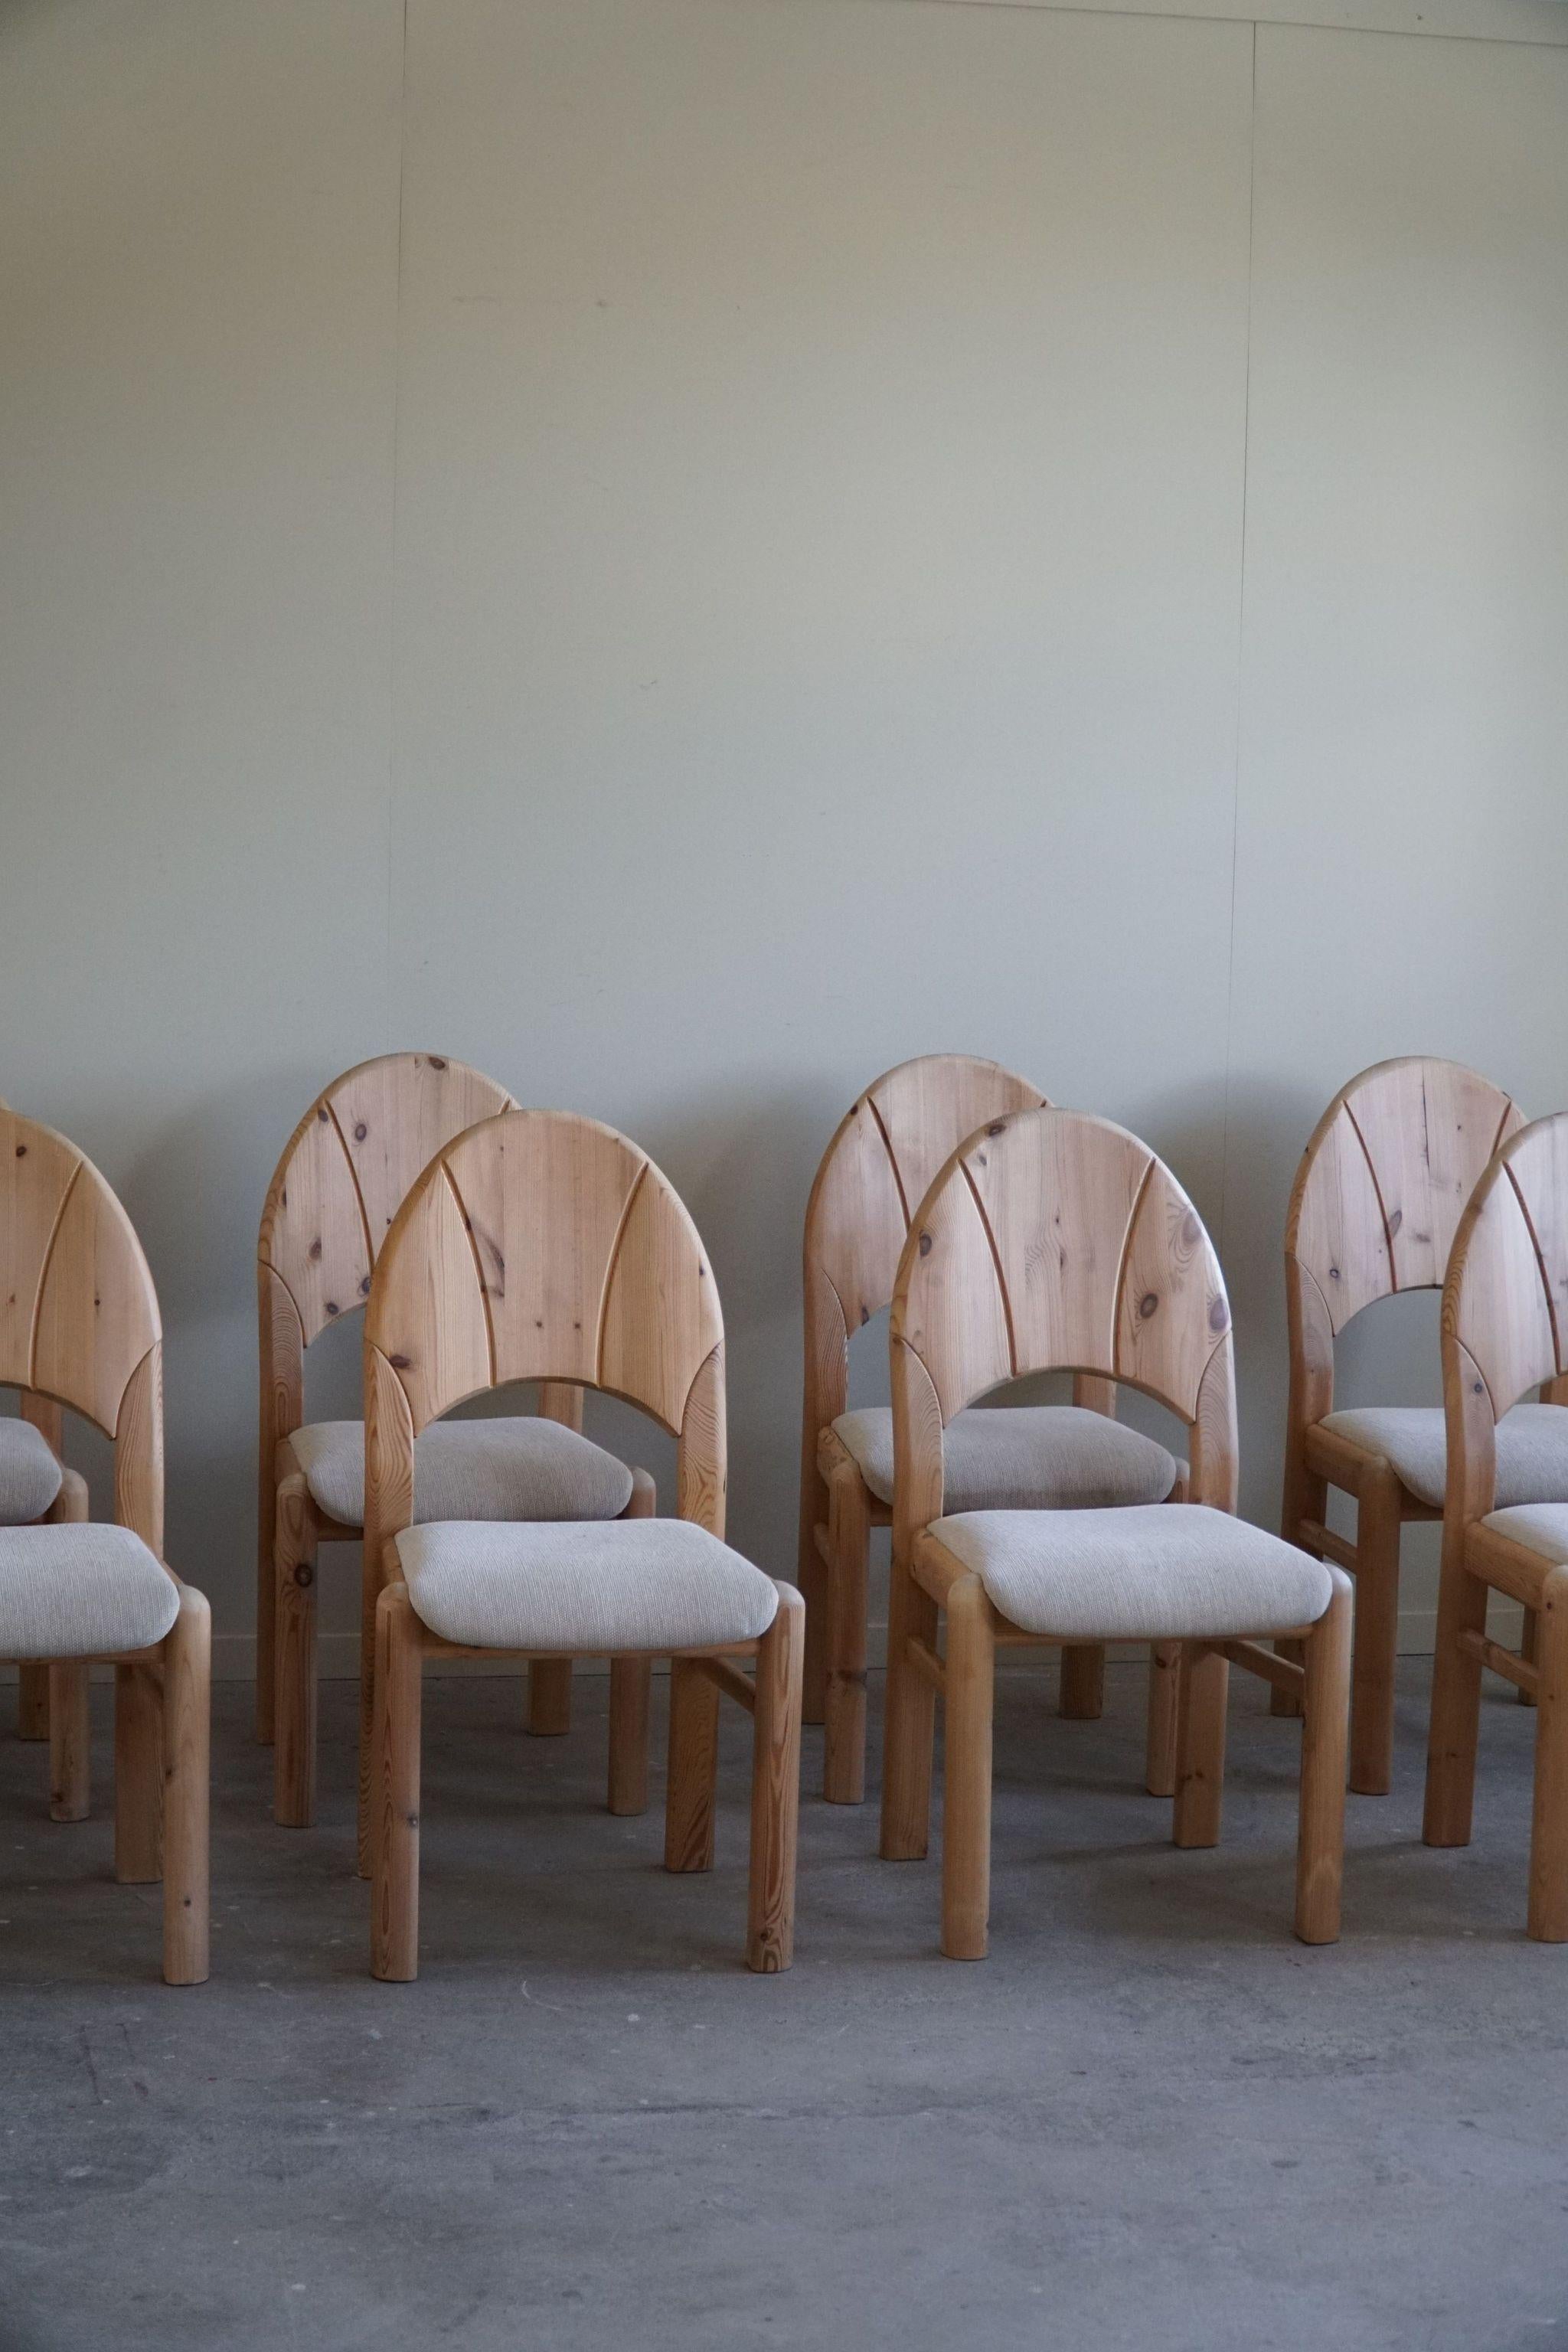 Ein hübsches Set von 8 skulpturalen Esszimmerstühlen aus massivem Kiefernholz, gepolstert mit hochwertiger Wolle. Hergestellt von einem dänischen Möbelschreiner in den 1970er Jahren. Diese Stühle haben einen wirklich starken Eindruck, der sich gut